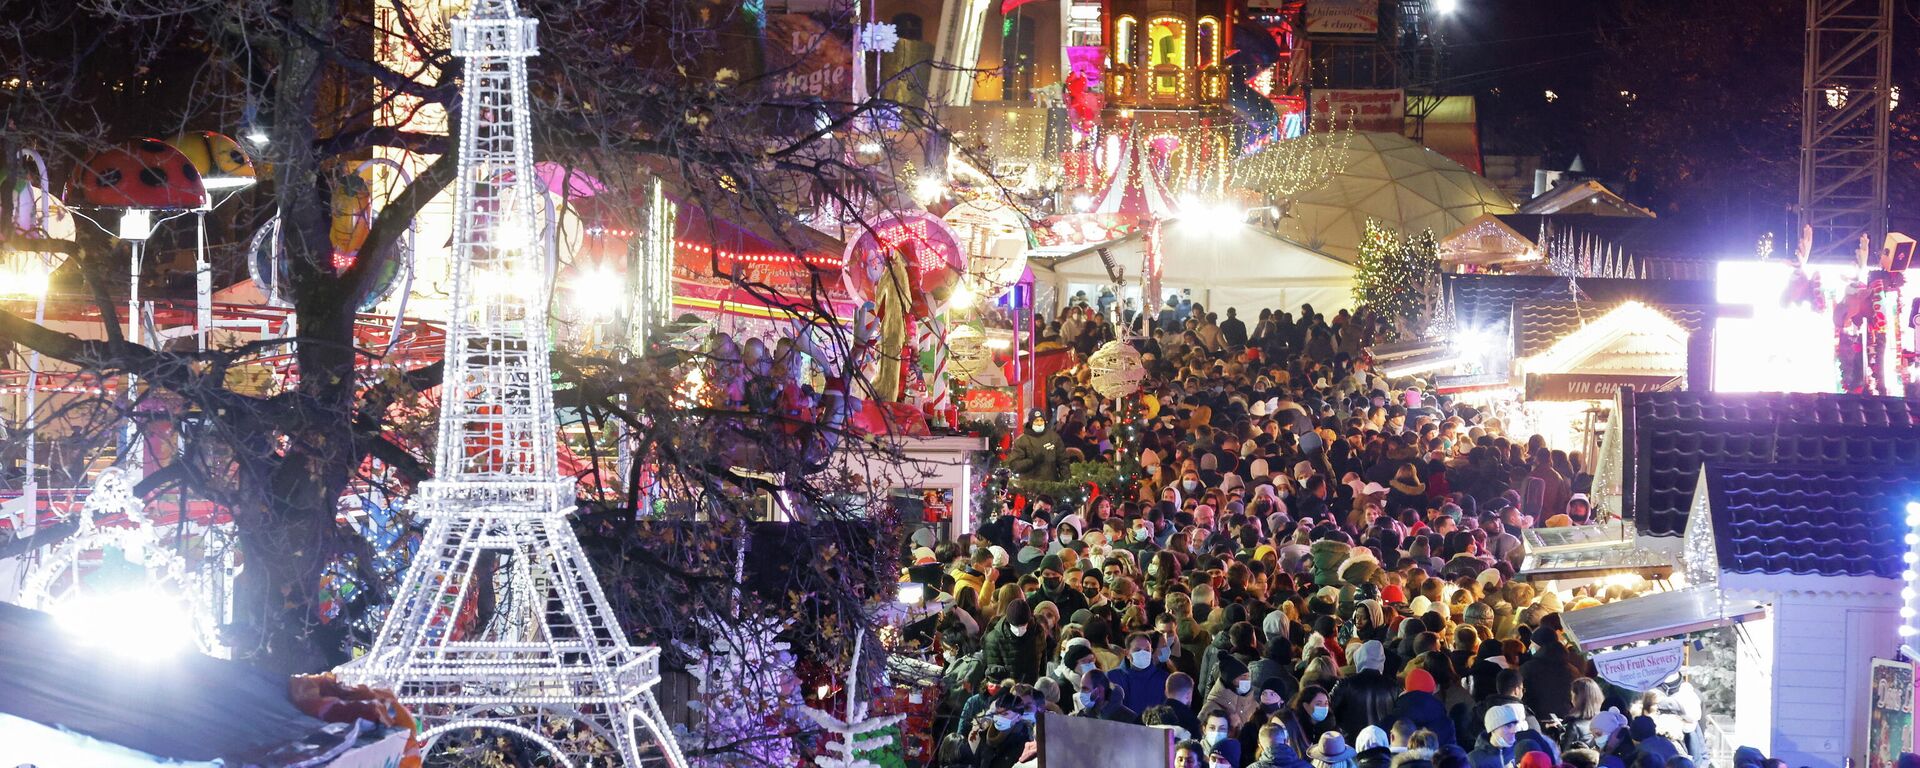 سوق الكريسماس في حديقة التويلري بباريس فرنسا 27 نوفمبر 2021
 - سبوتنيك عربي, 1920, 28.11.2021